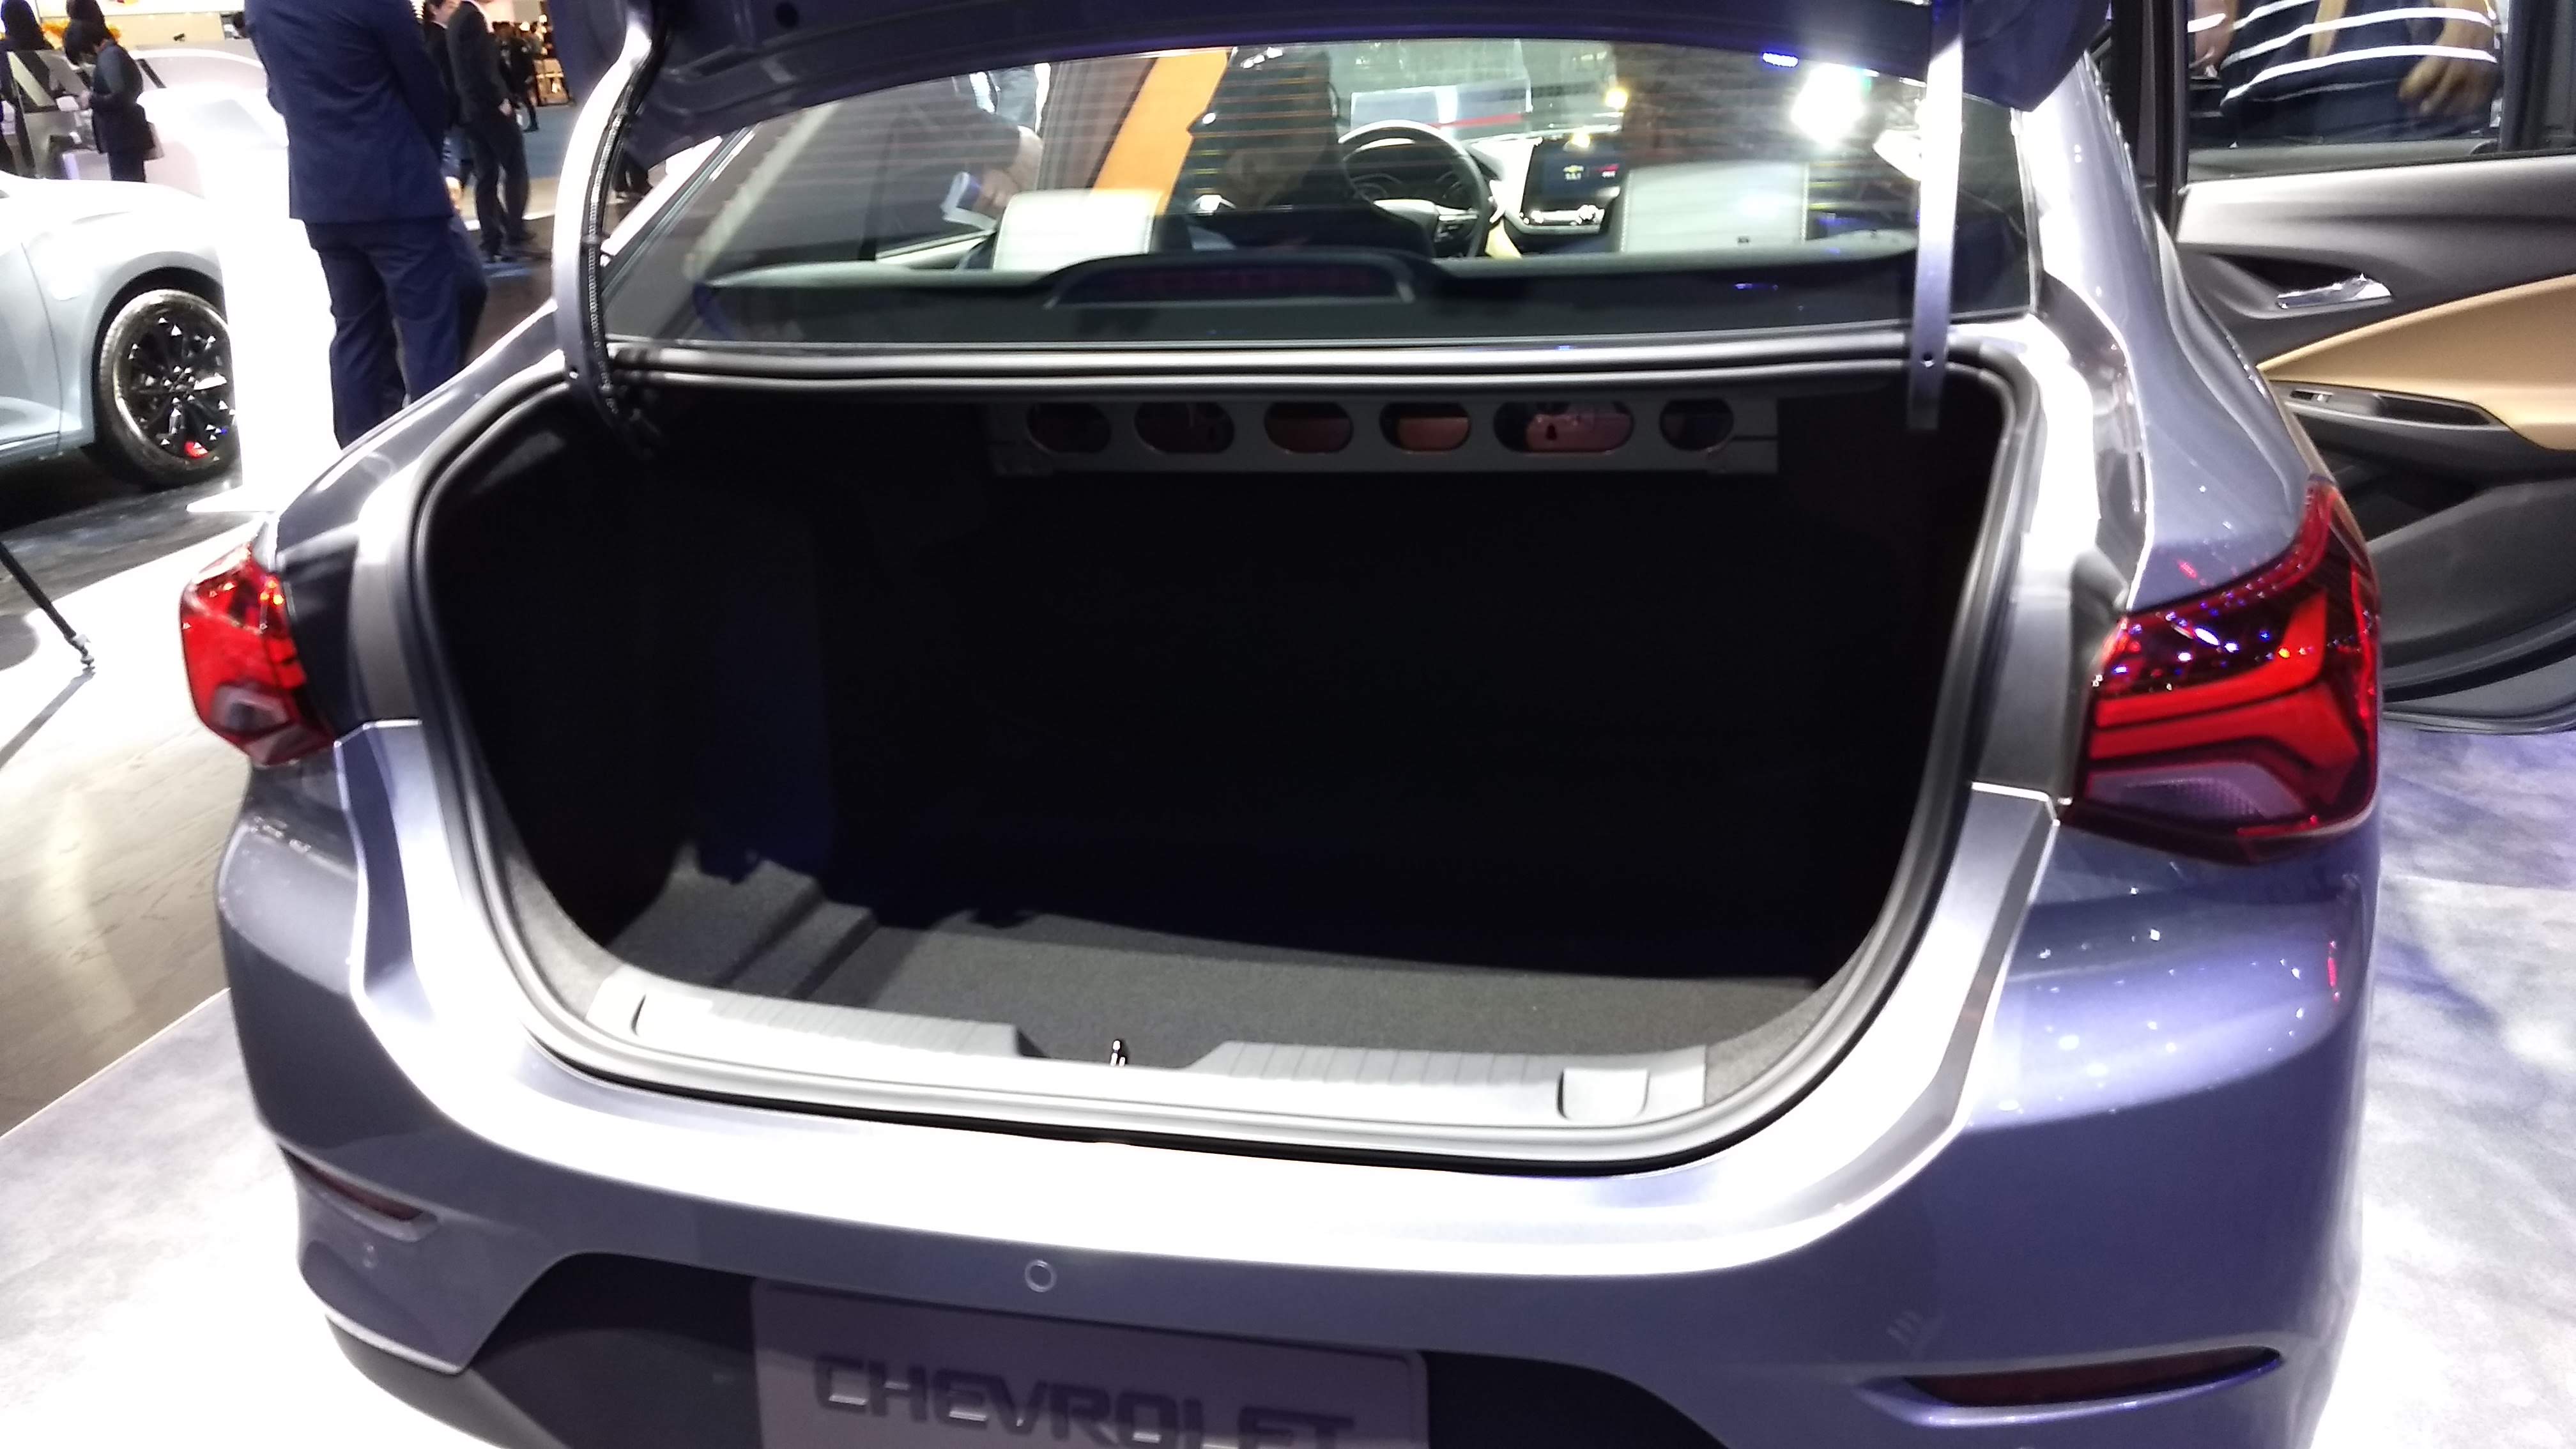 Chevrolet Onix Sedan: tudo que vimos bem de perto no sucessor do Prisma